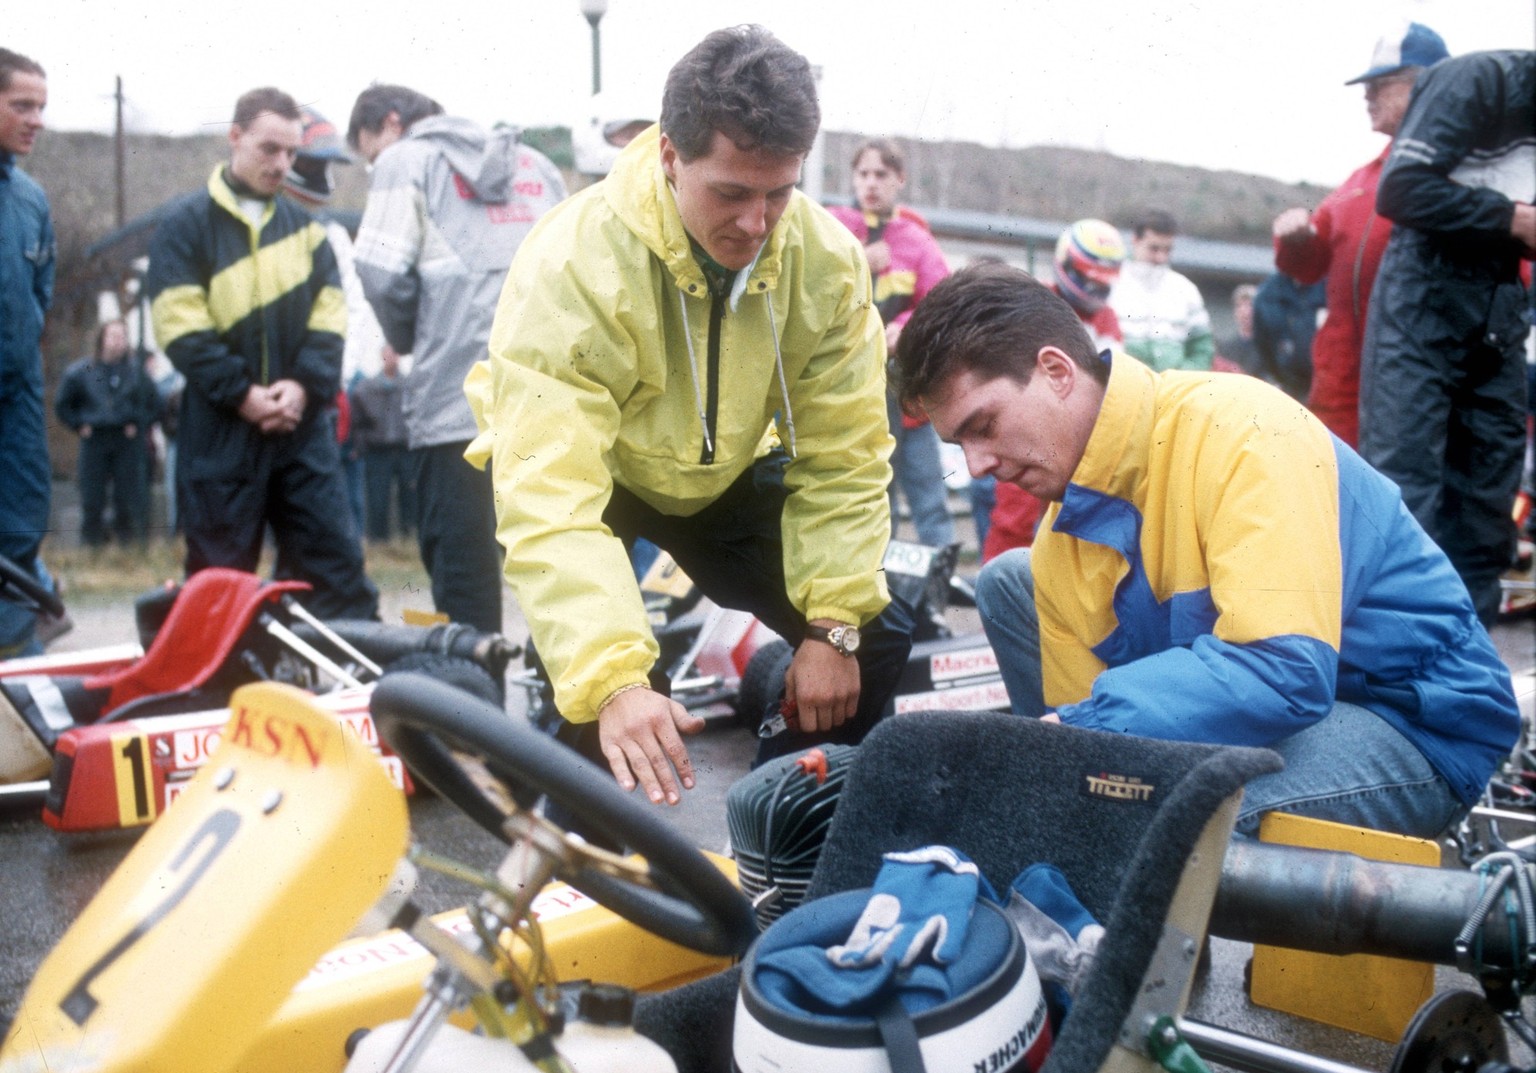 Motorsport: Michael Schumacher bei einen Kartrennen auf der Kartbahn in Kerpen 29.11.1992. Schumacher mit einem Mechaniker an seinem Cart *** Motor racing Michael Schumacher in a Kart race on the trac ...